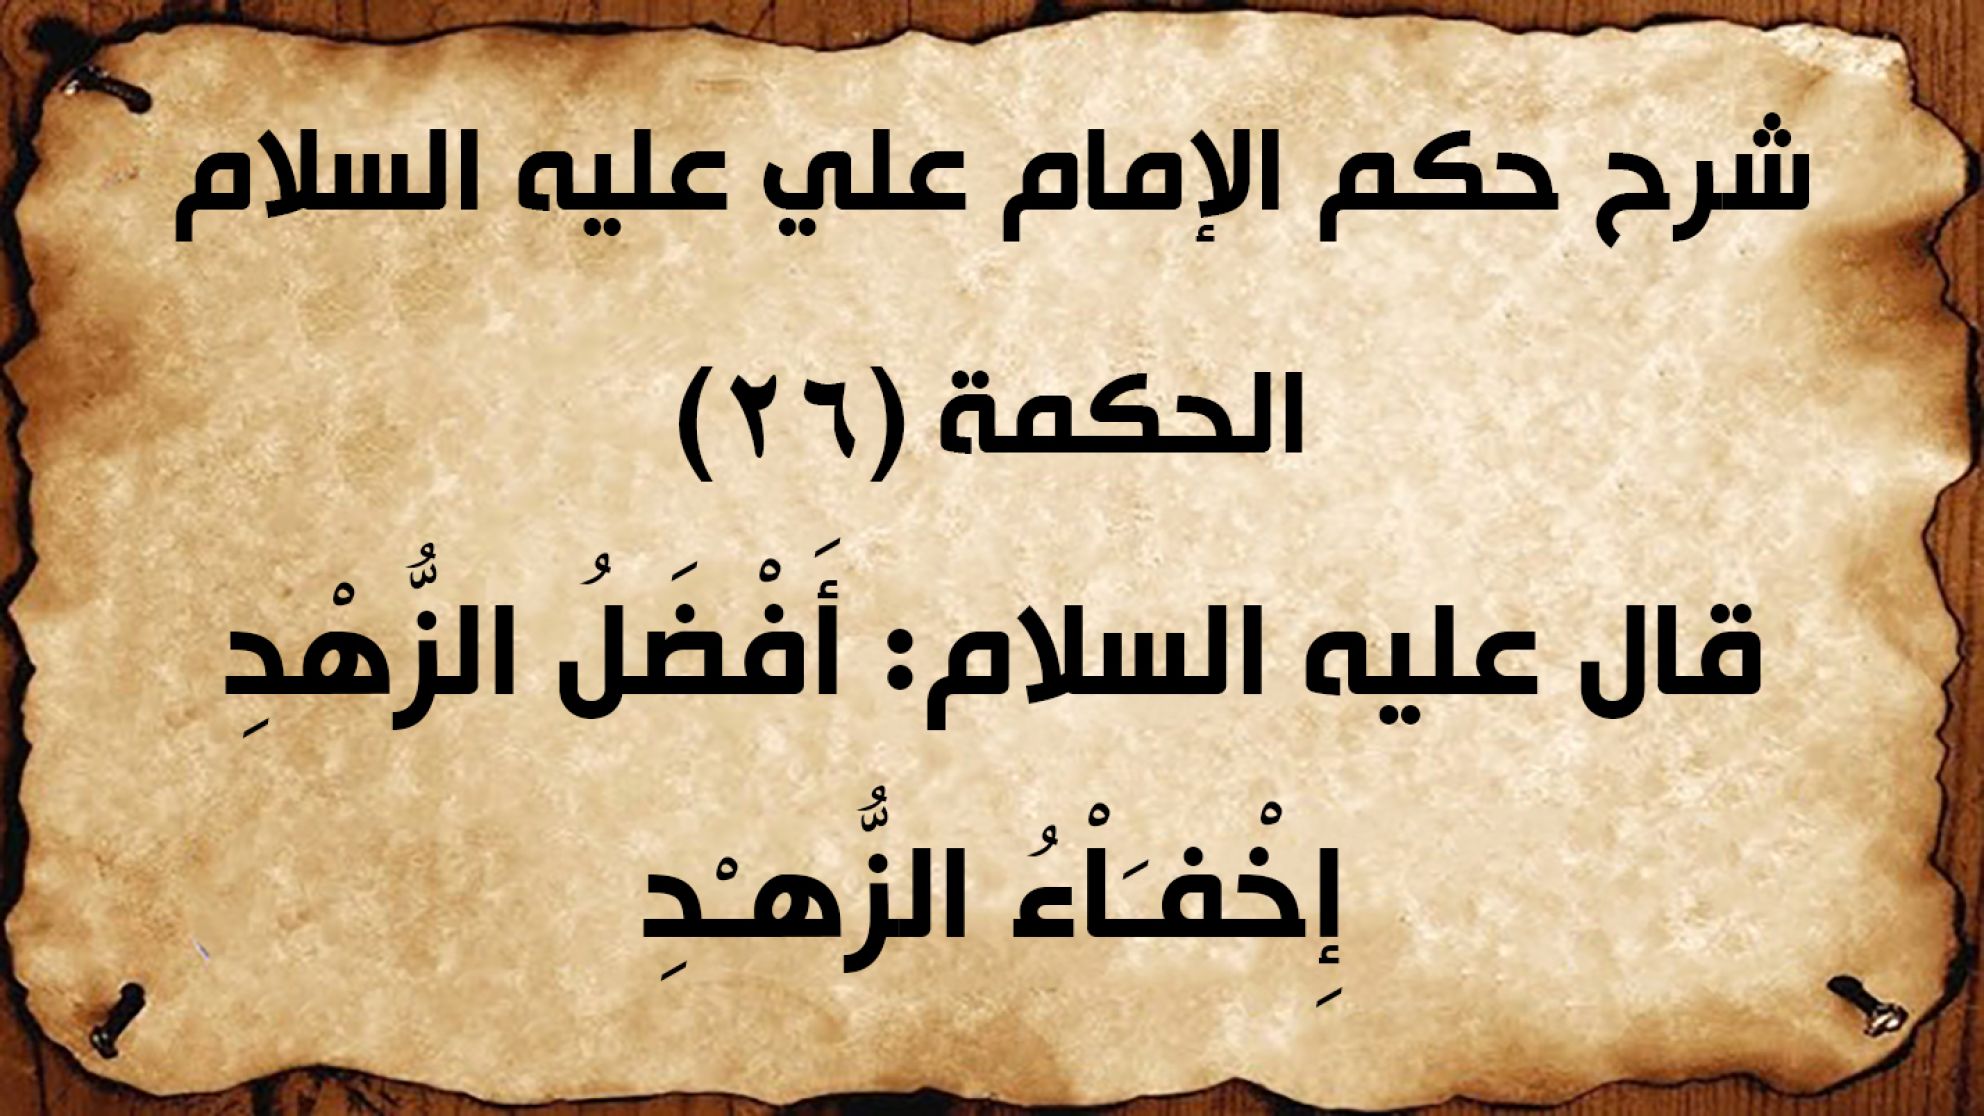 شرح حكم الإمام علي عليه السلام الحكمة (26) قال عليه السلام: أَفْضَلُ الزُّهْدِ إِخْفـَاْءُ الزُّهـْدِ